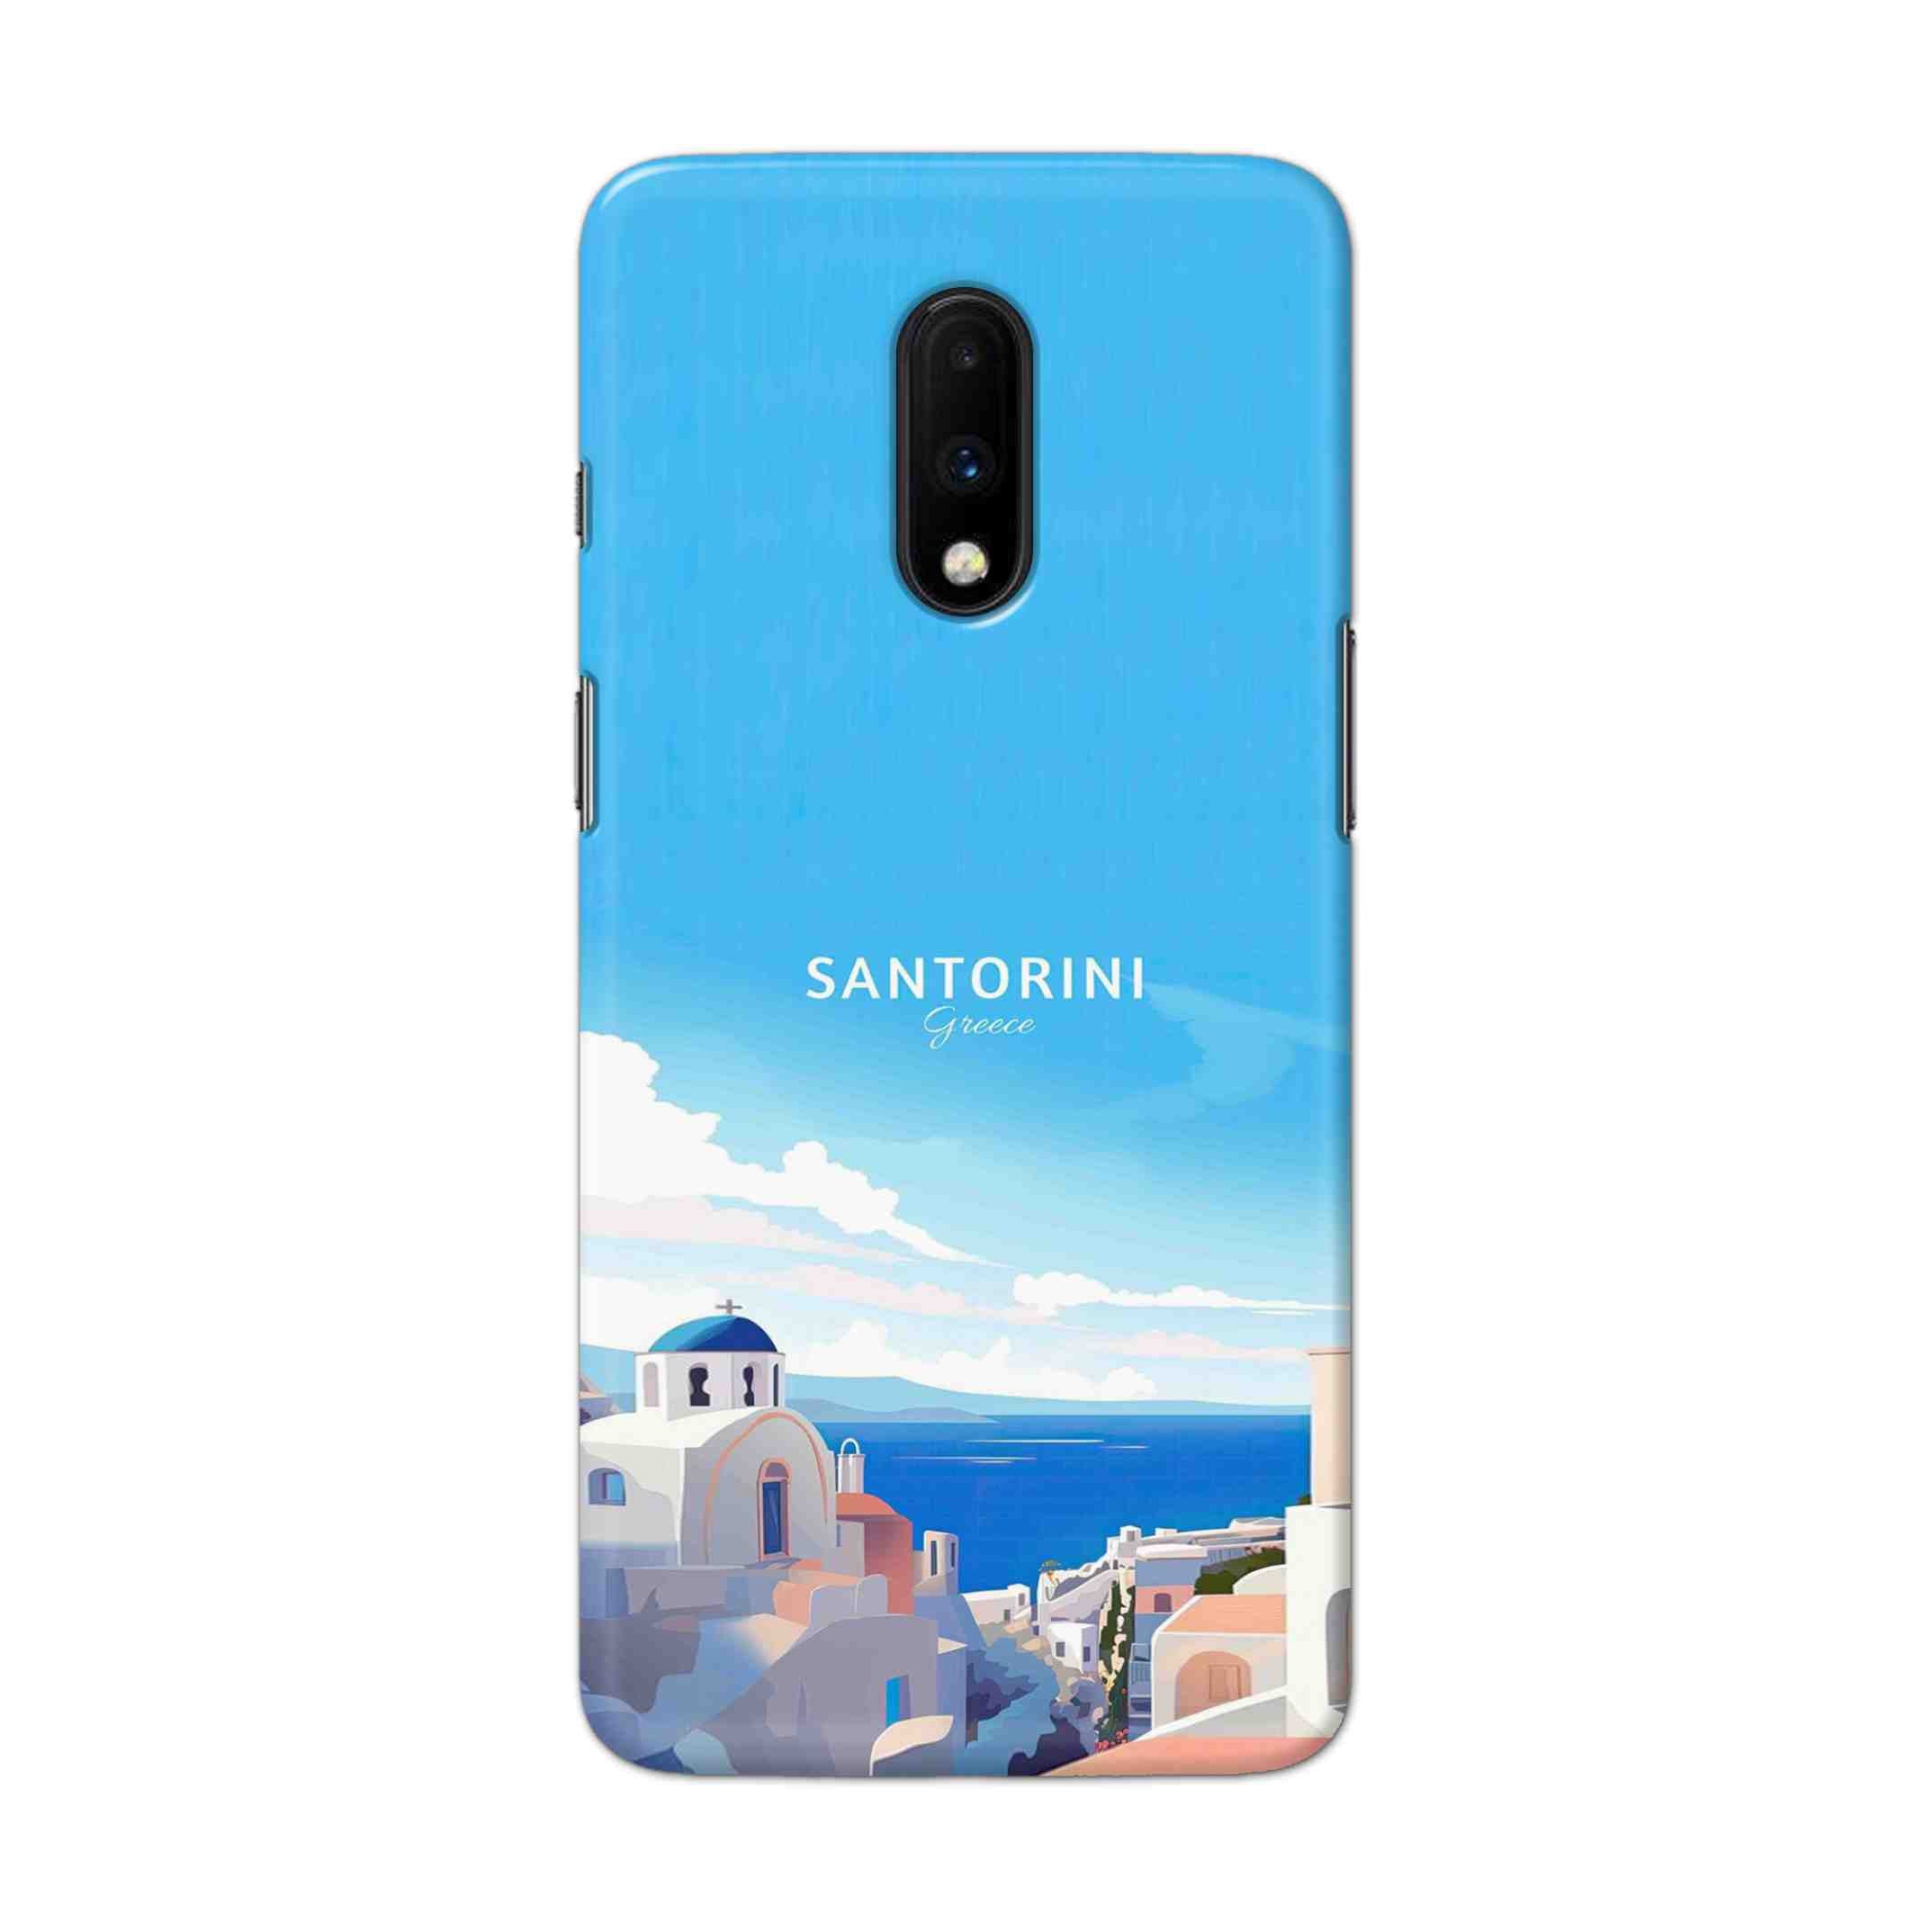 Buy Santorini Hard Back Mobile Phone Case Cover For OnePlus 7 Online